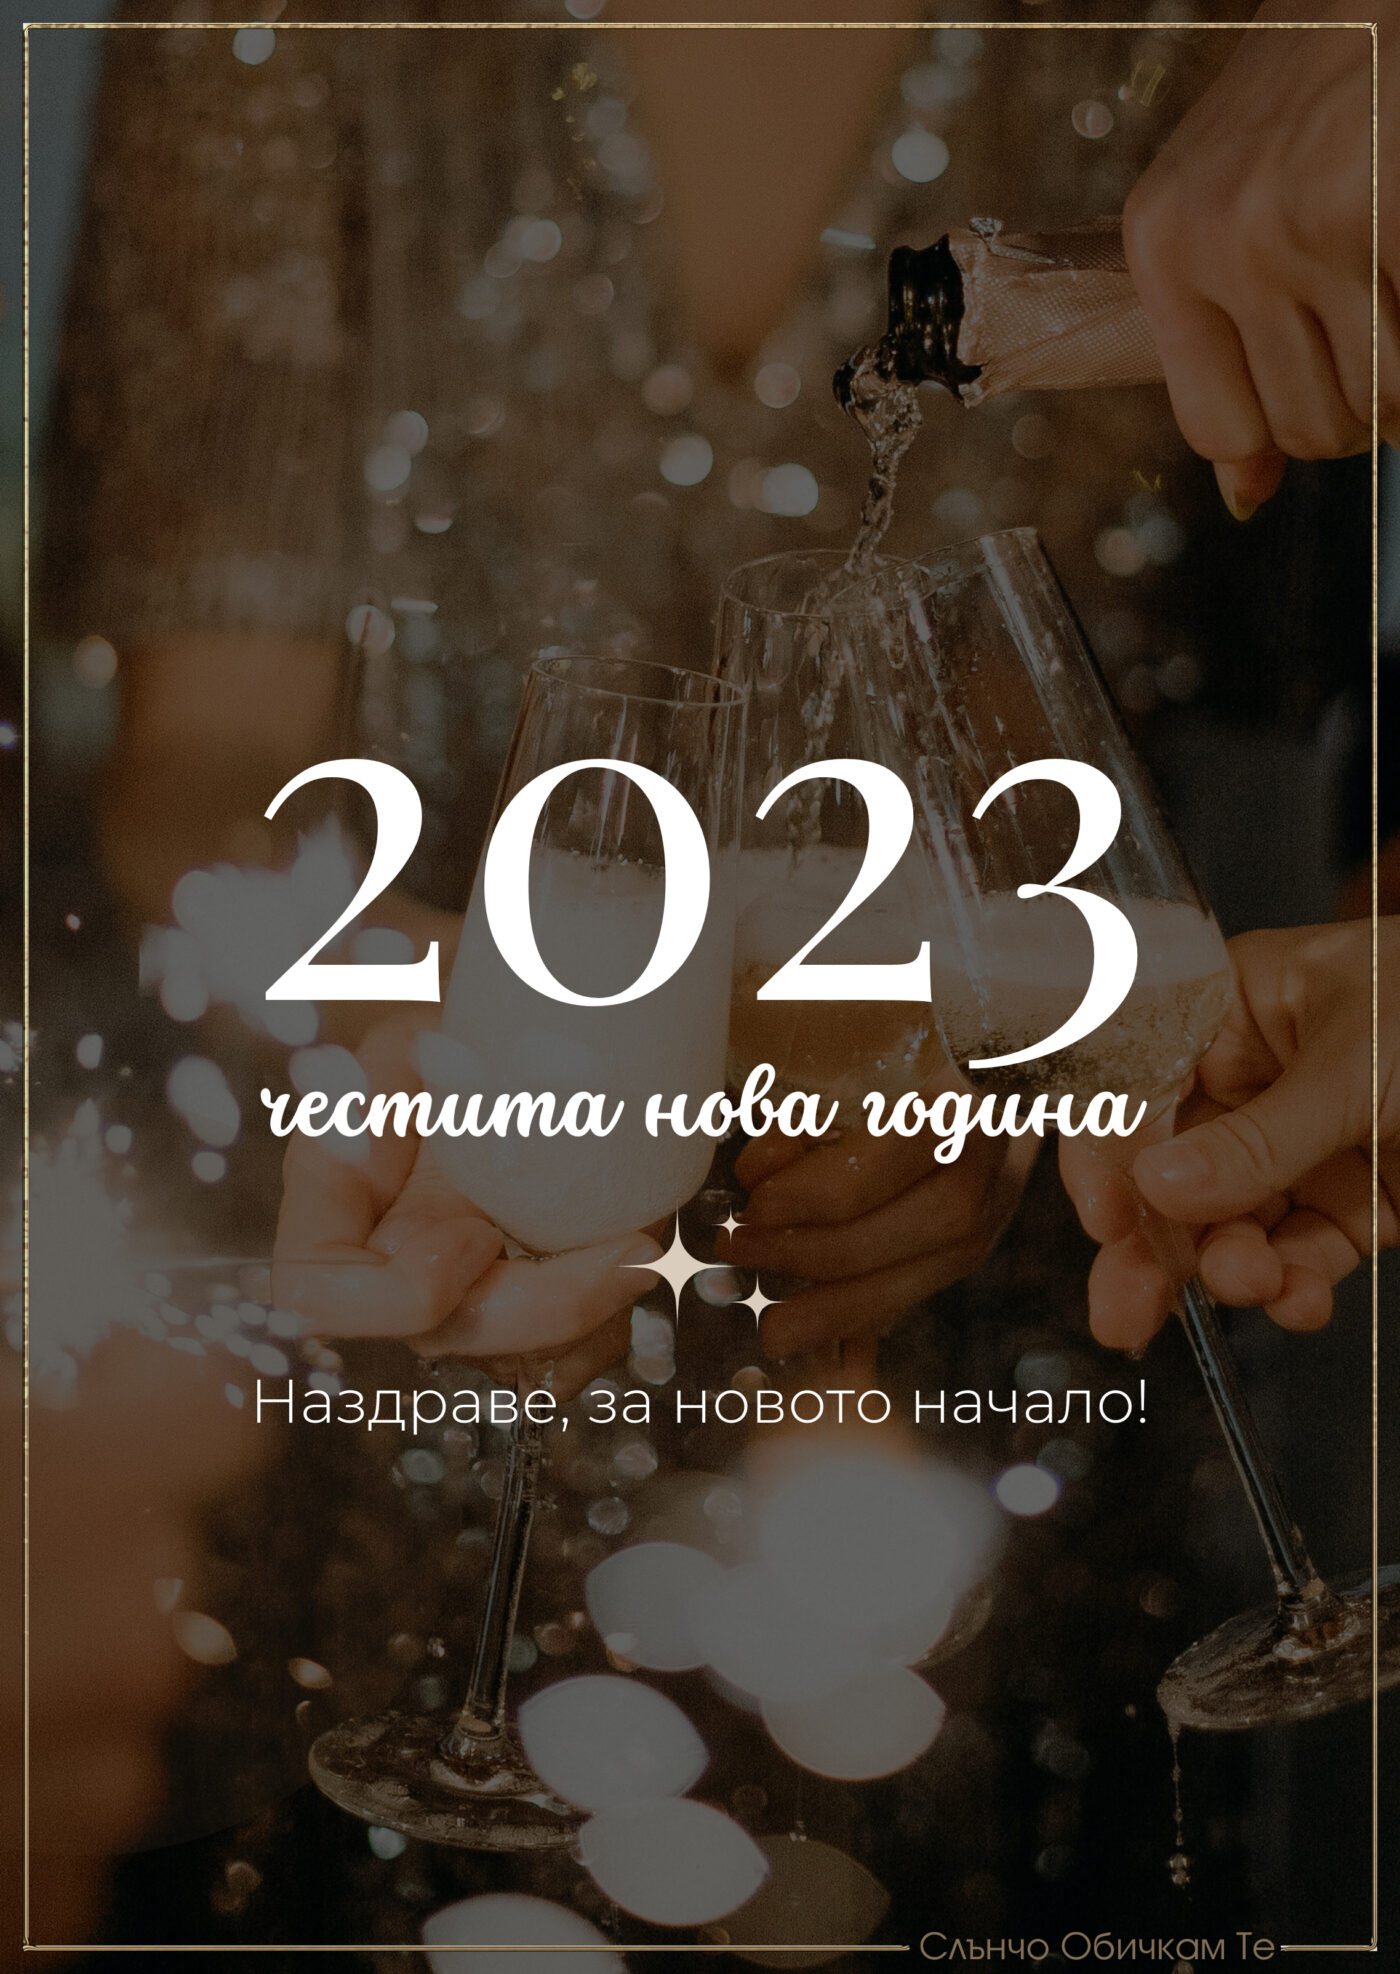 Нова година 2023 наздраве, Новогодишни картички, Нова година 2023, честита нова година, картички за нова година 2023, пожелания за нова година, за много години, слънчо обичкам те